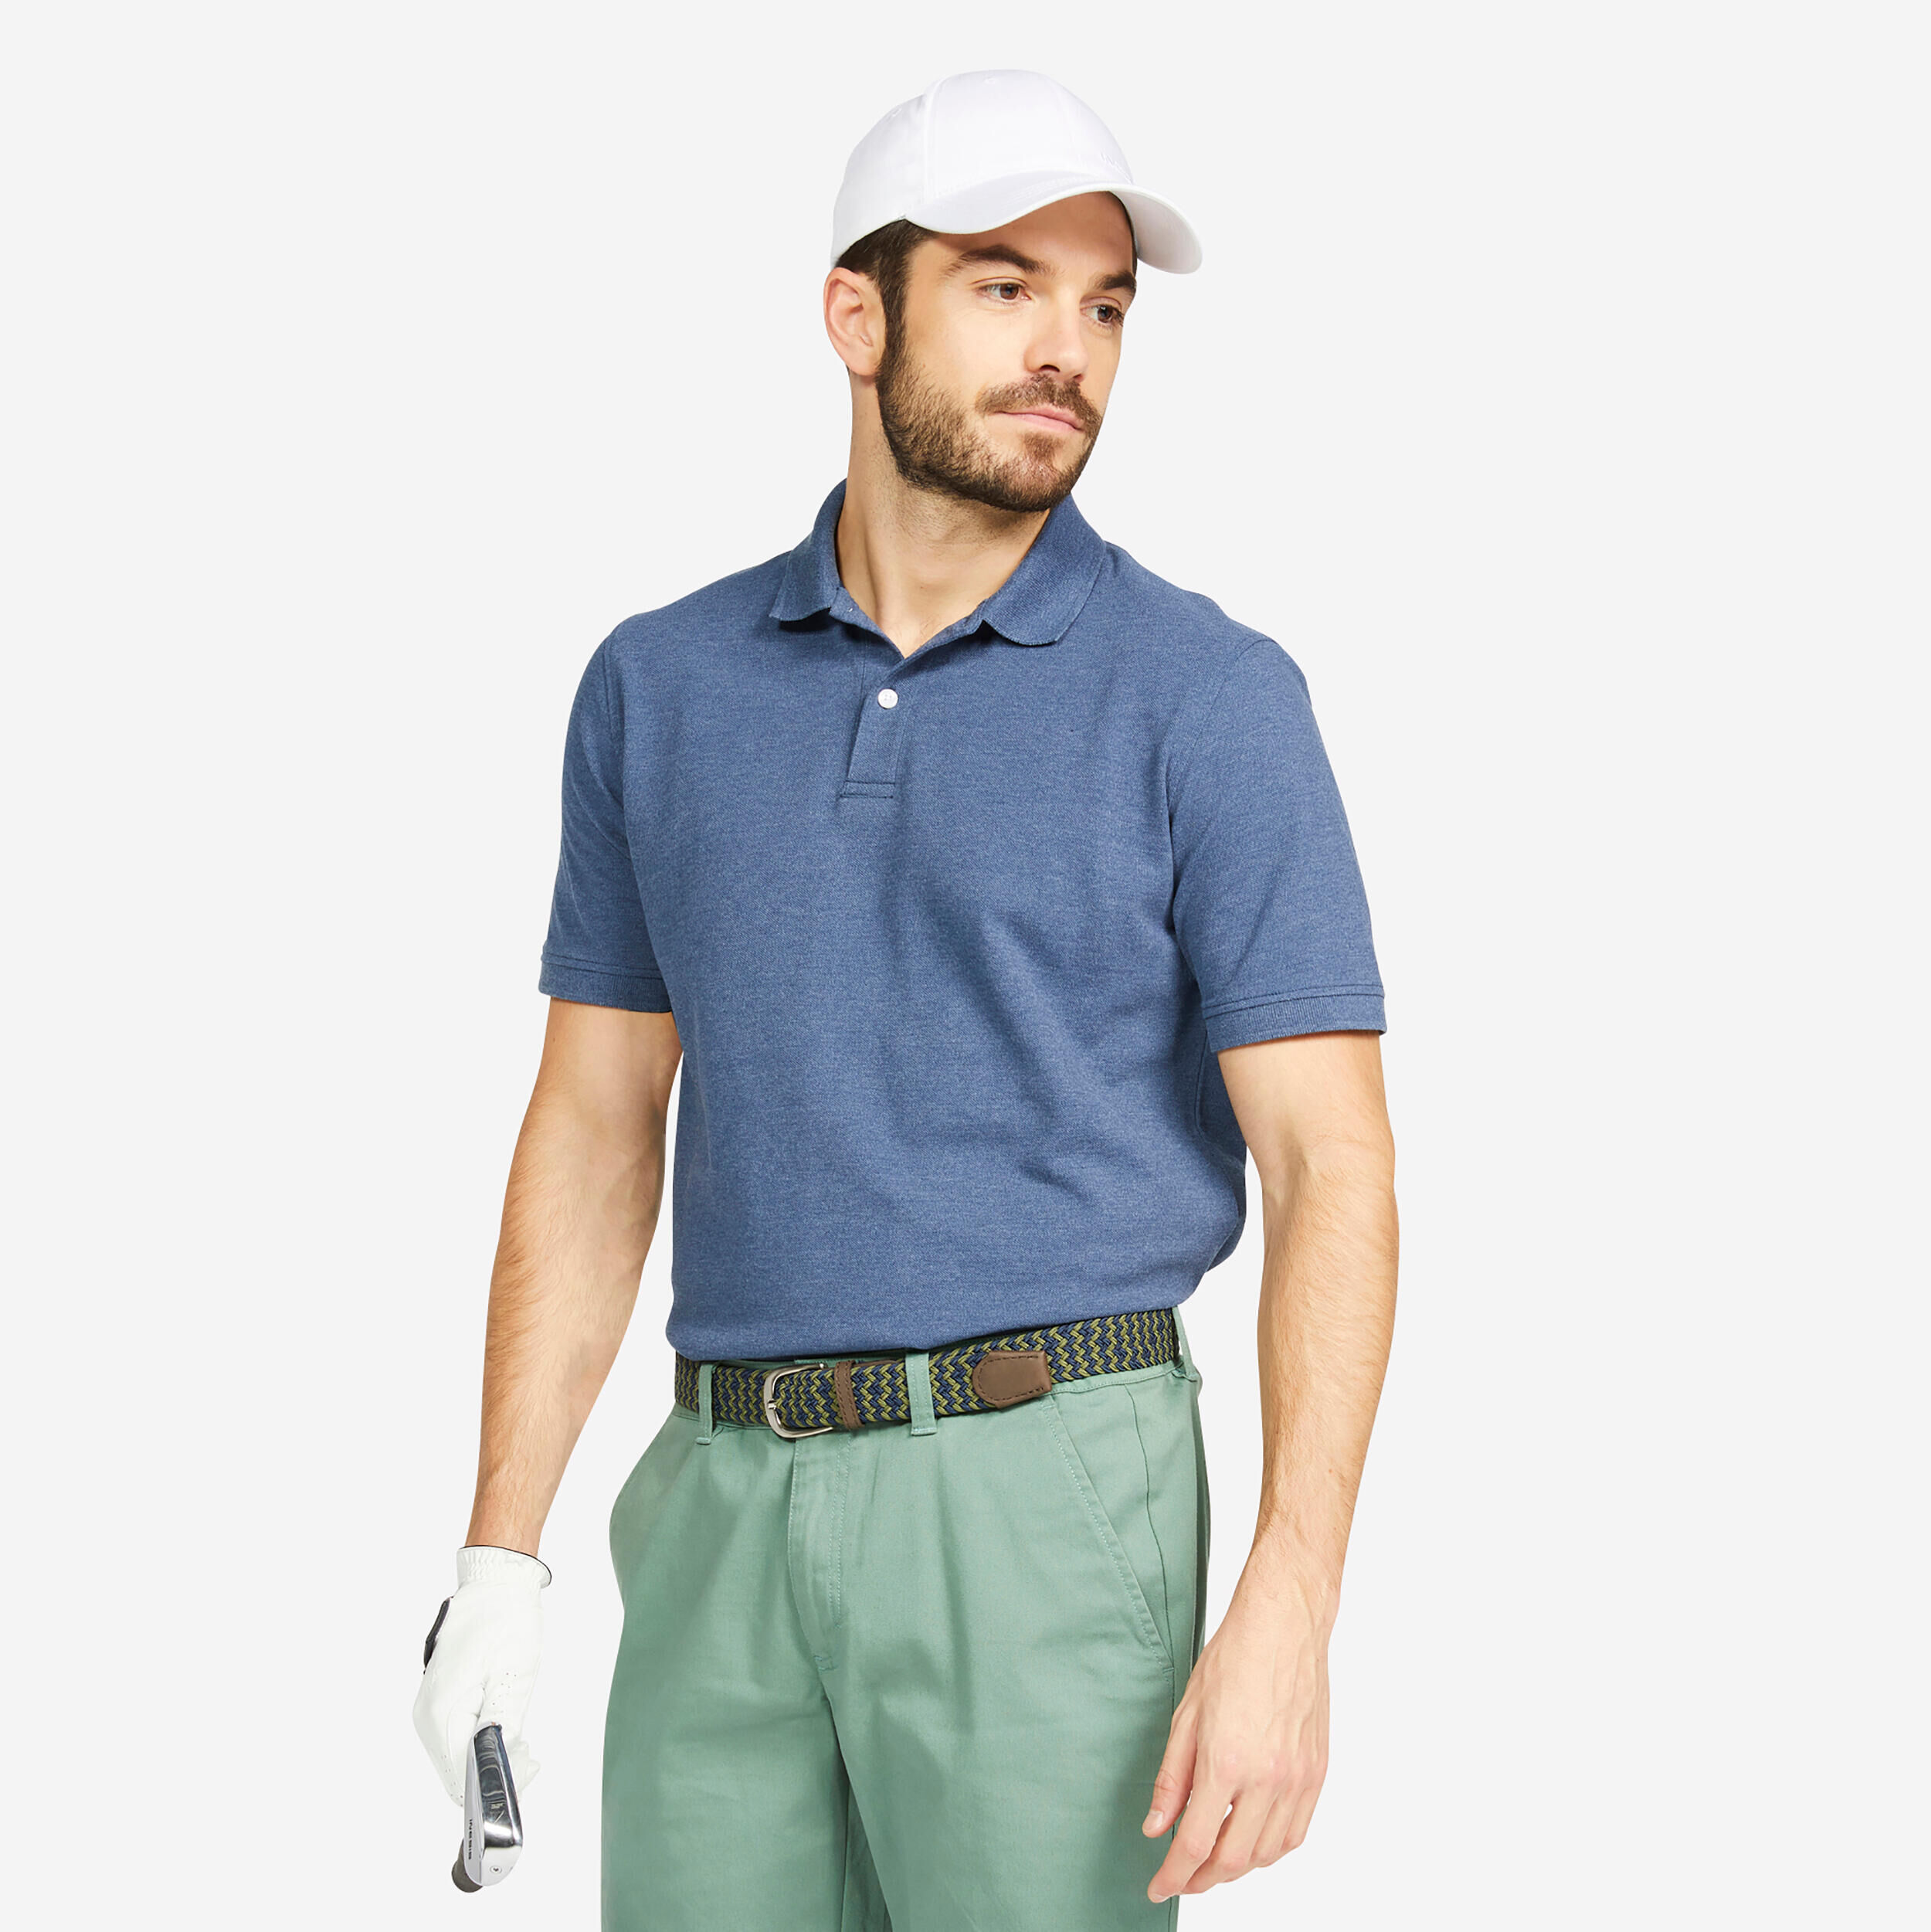 INESIS Men's short-sleeved golf polo shirt - MW500 slate blue